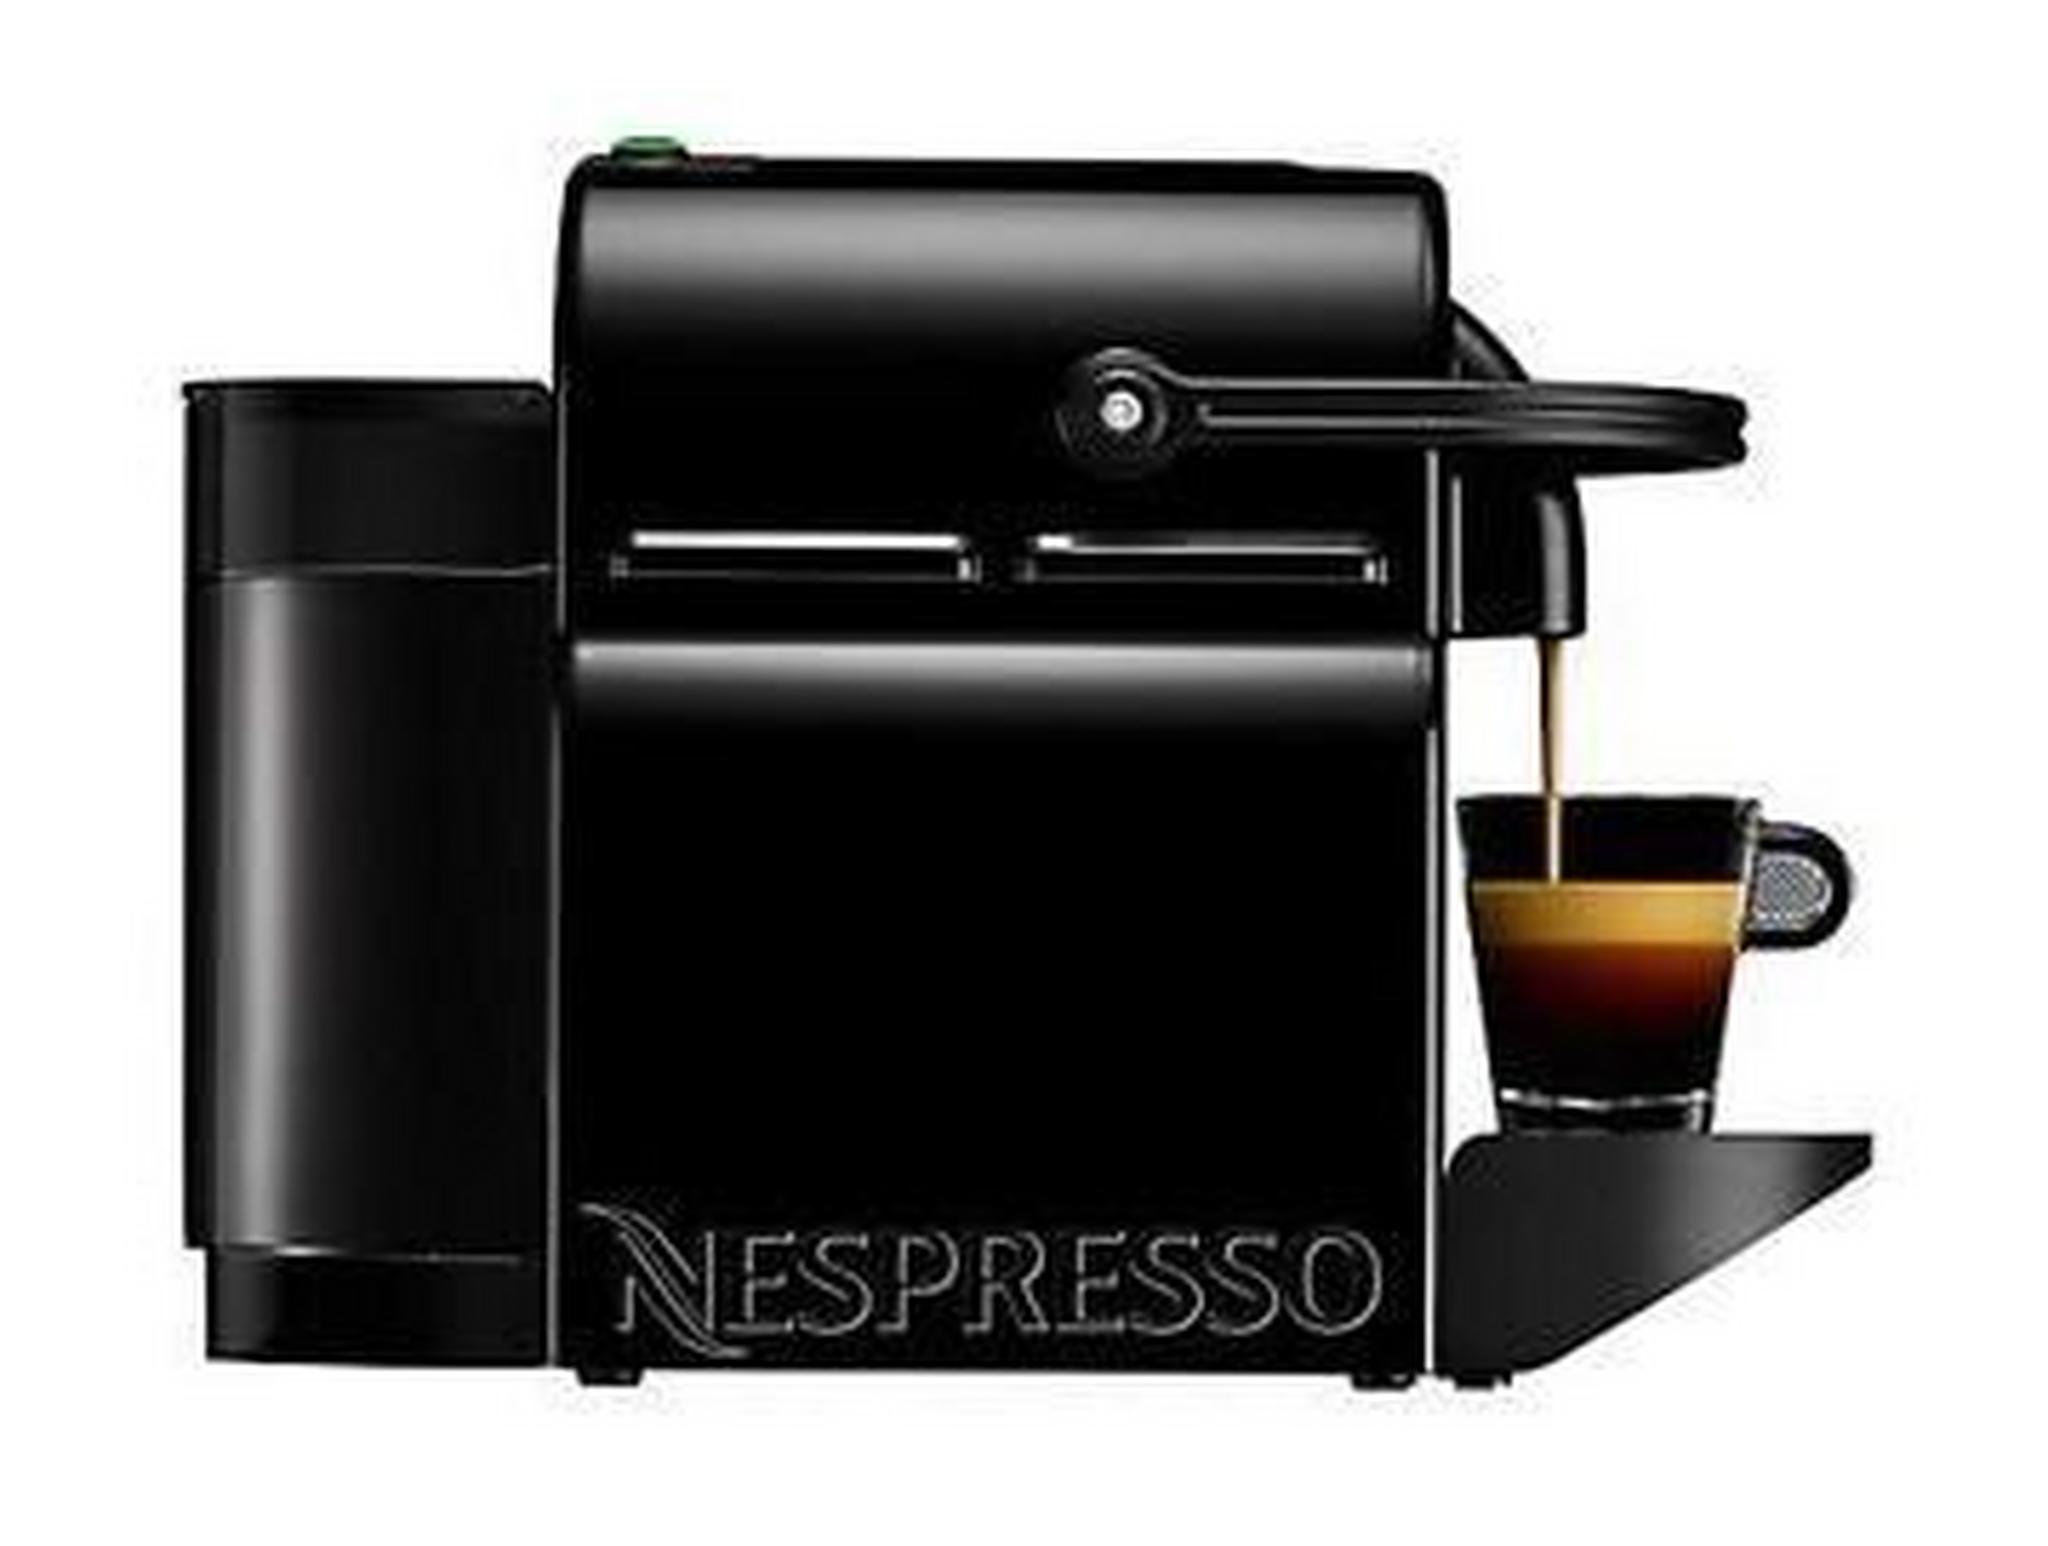 ماكينة تحضير القهوة انيسيا من نسبريسو، 1260 واط، 0.7 لتر، D40-ME-BK-NE - اسود